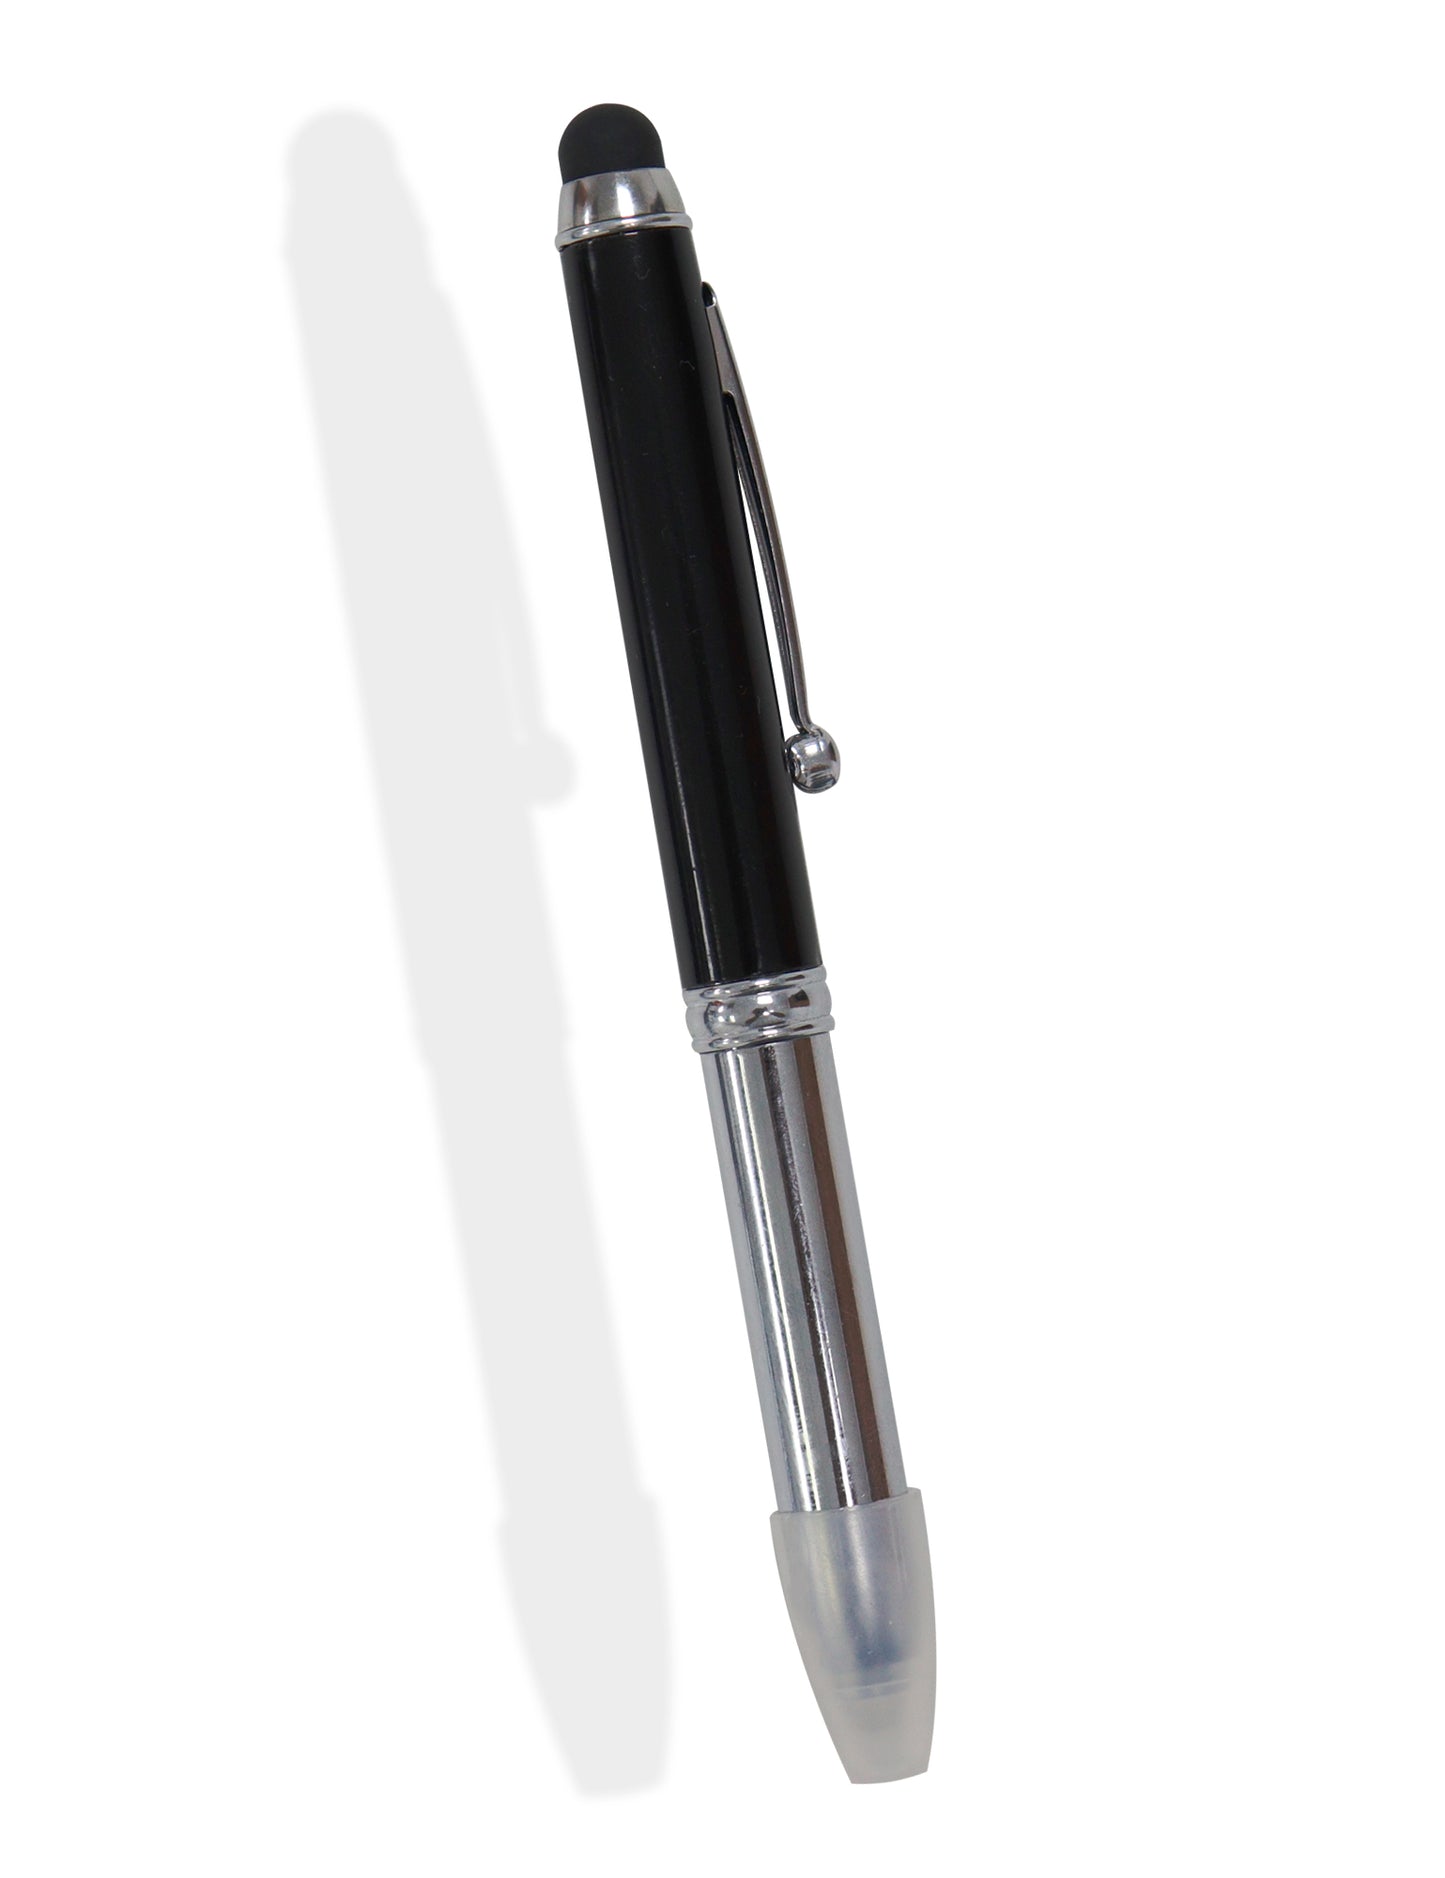 Stylus 3 in 1 Multi Utility Pen Light